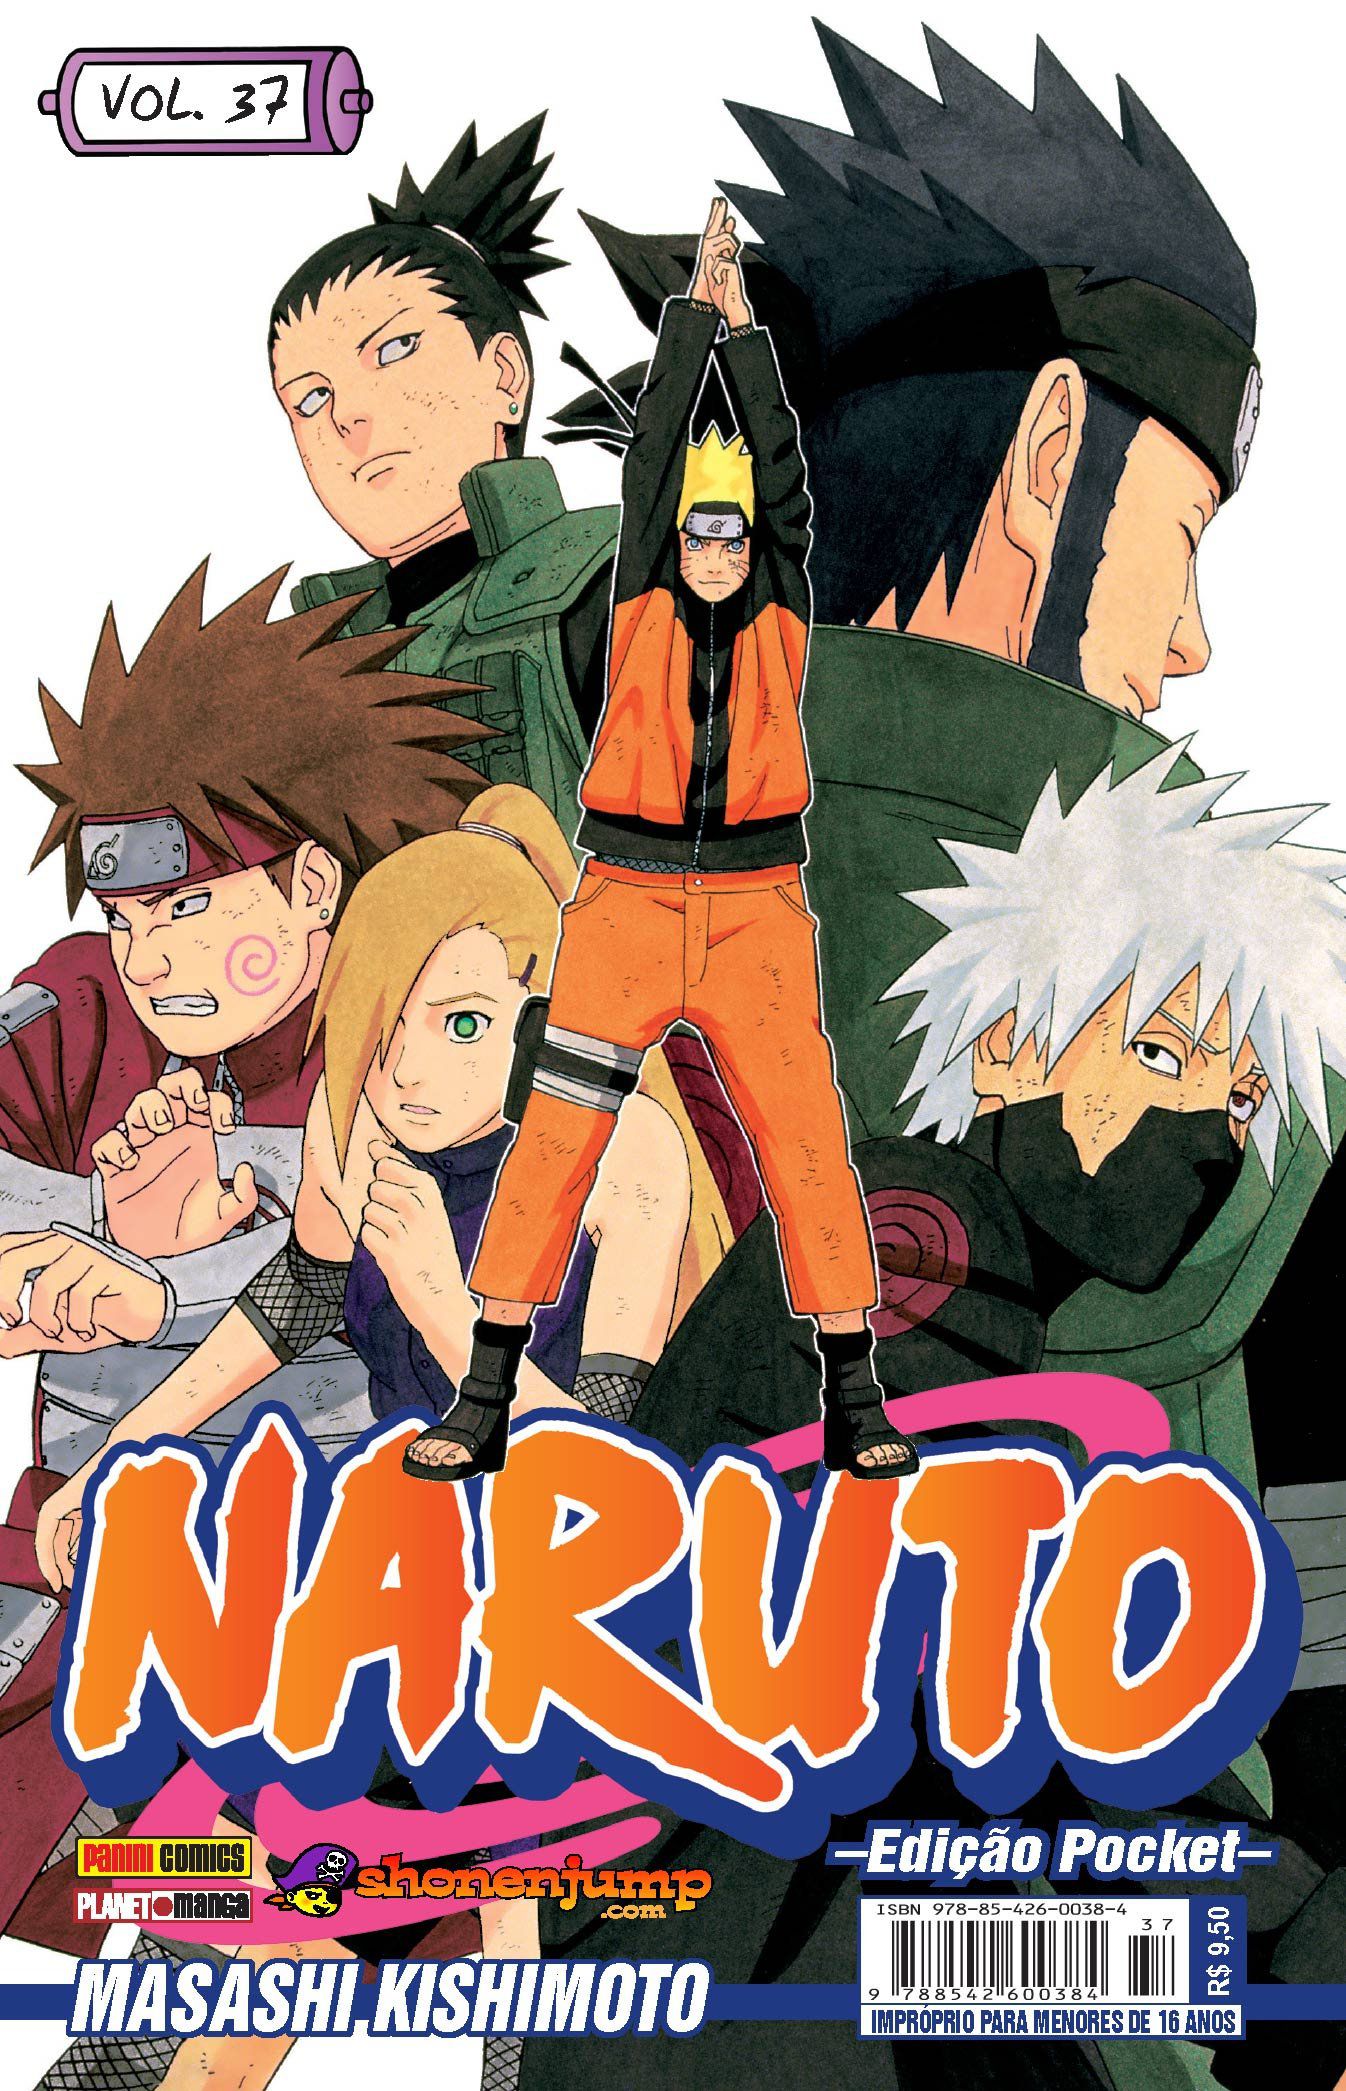 Mangá Naruto em Português Volume 39 Edição Pocket, naruto em português